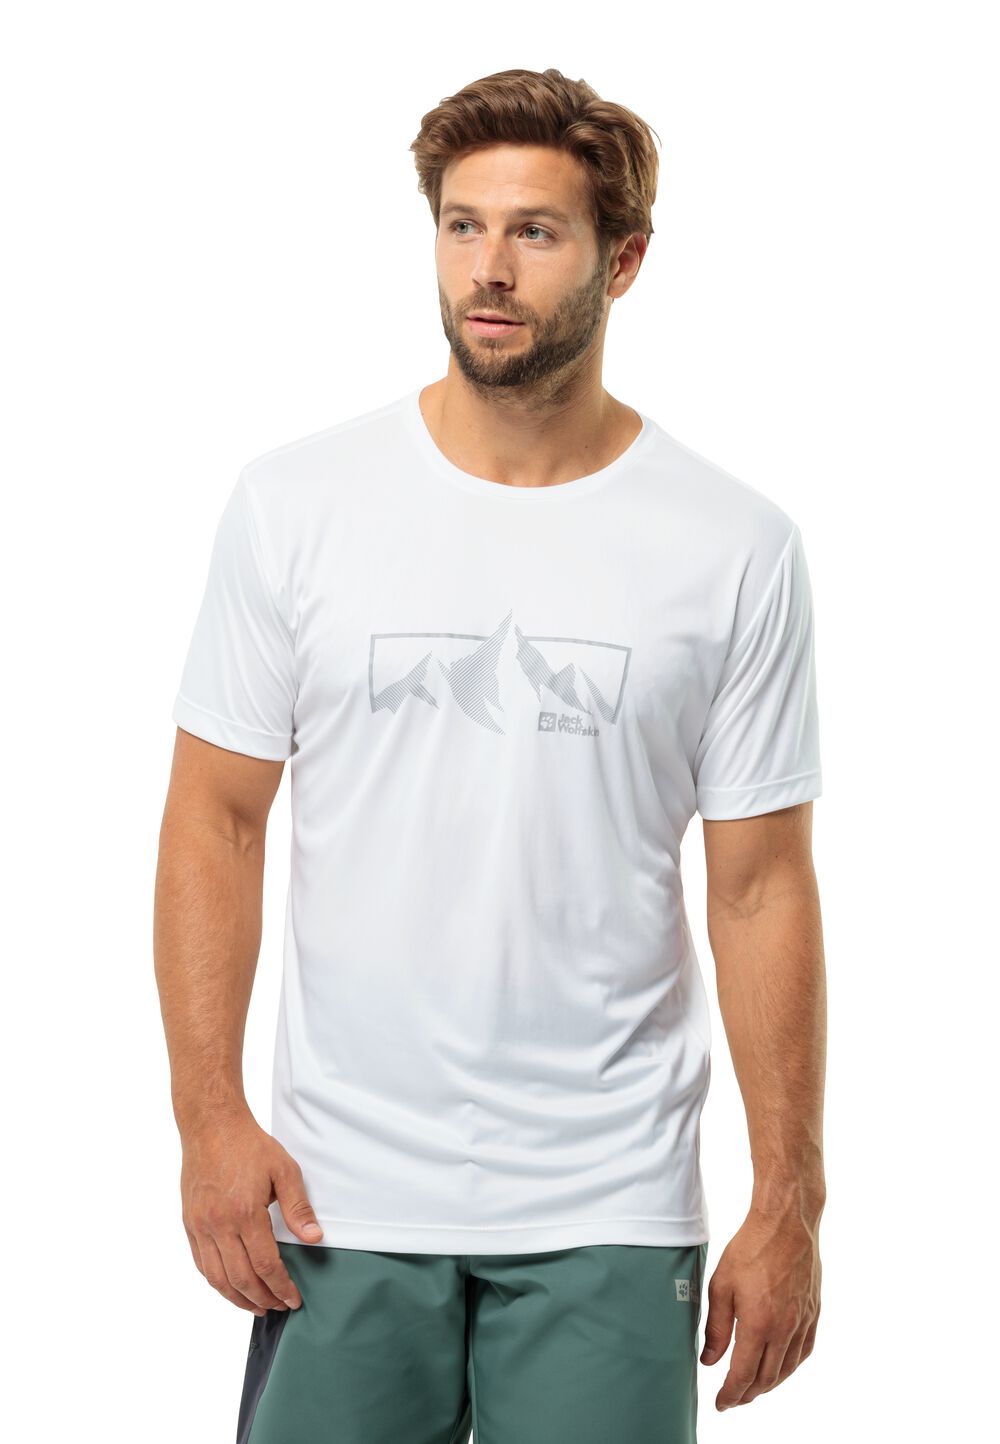 Jack Wolfskin Funktionsshirt Herren Peak Graphic T-Shirt Men M weiß stark white von Jack Wolfskin